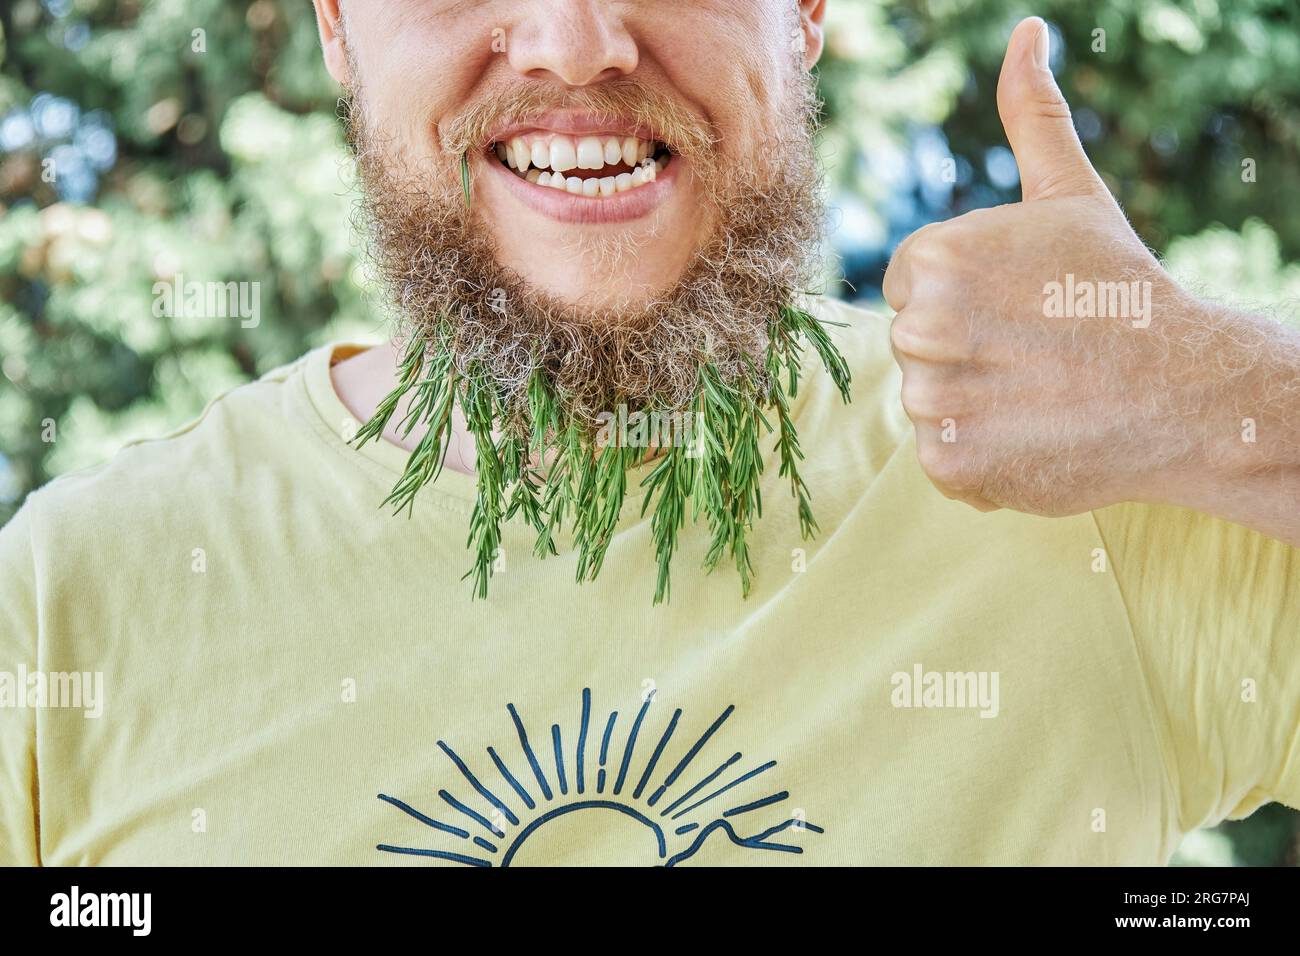 Lächelnder Männerbart und duftender Rosmarin-Zweig. Ein erwachsener, kindischer Mann auf einer sonnigen Wiese mit aufgeregtem Gesichtsausdruck und Daumen-hoch-Nahaufnahme Stockfoto